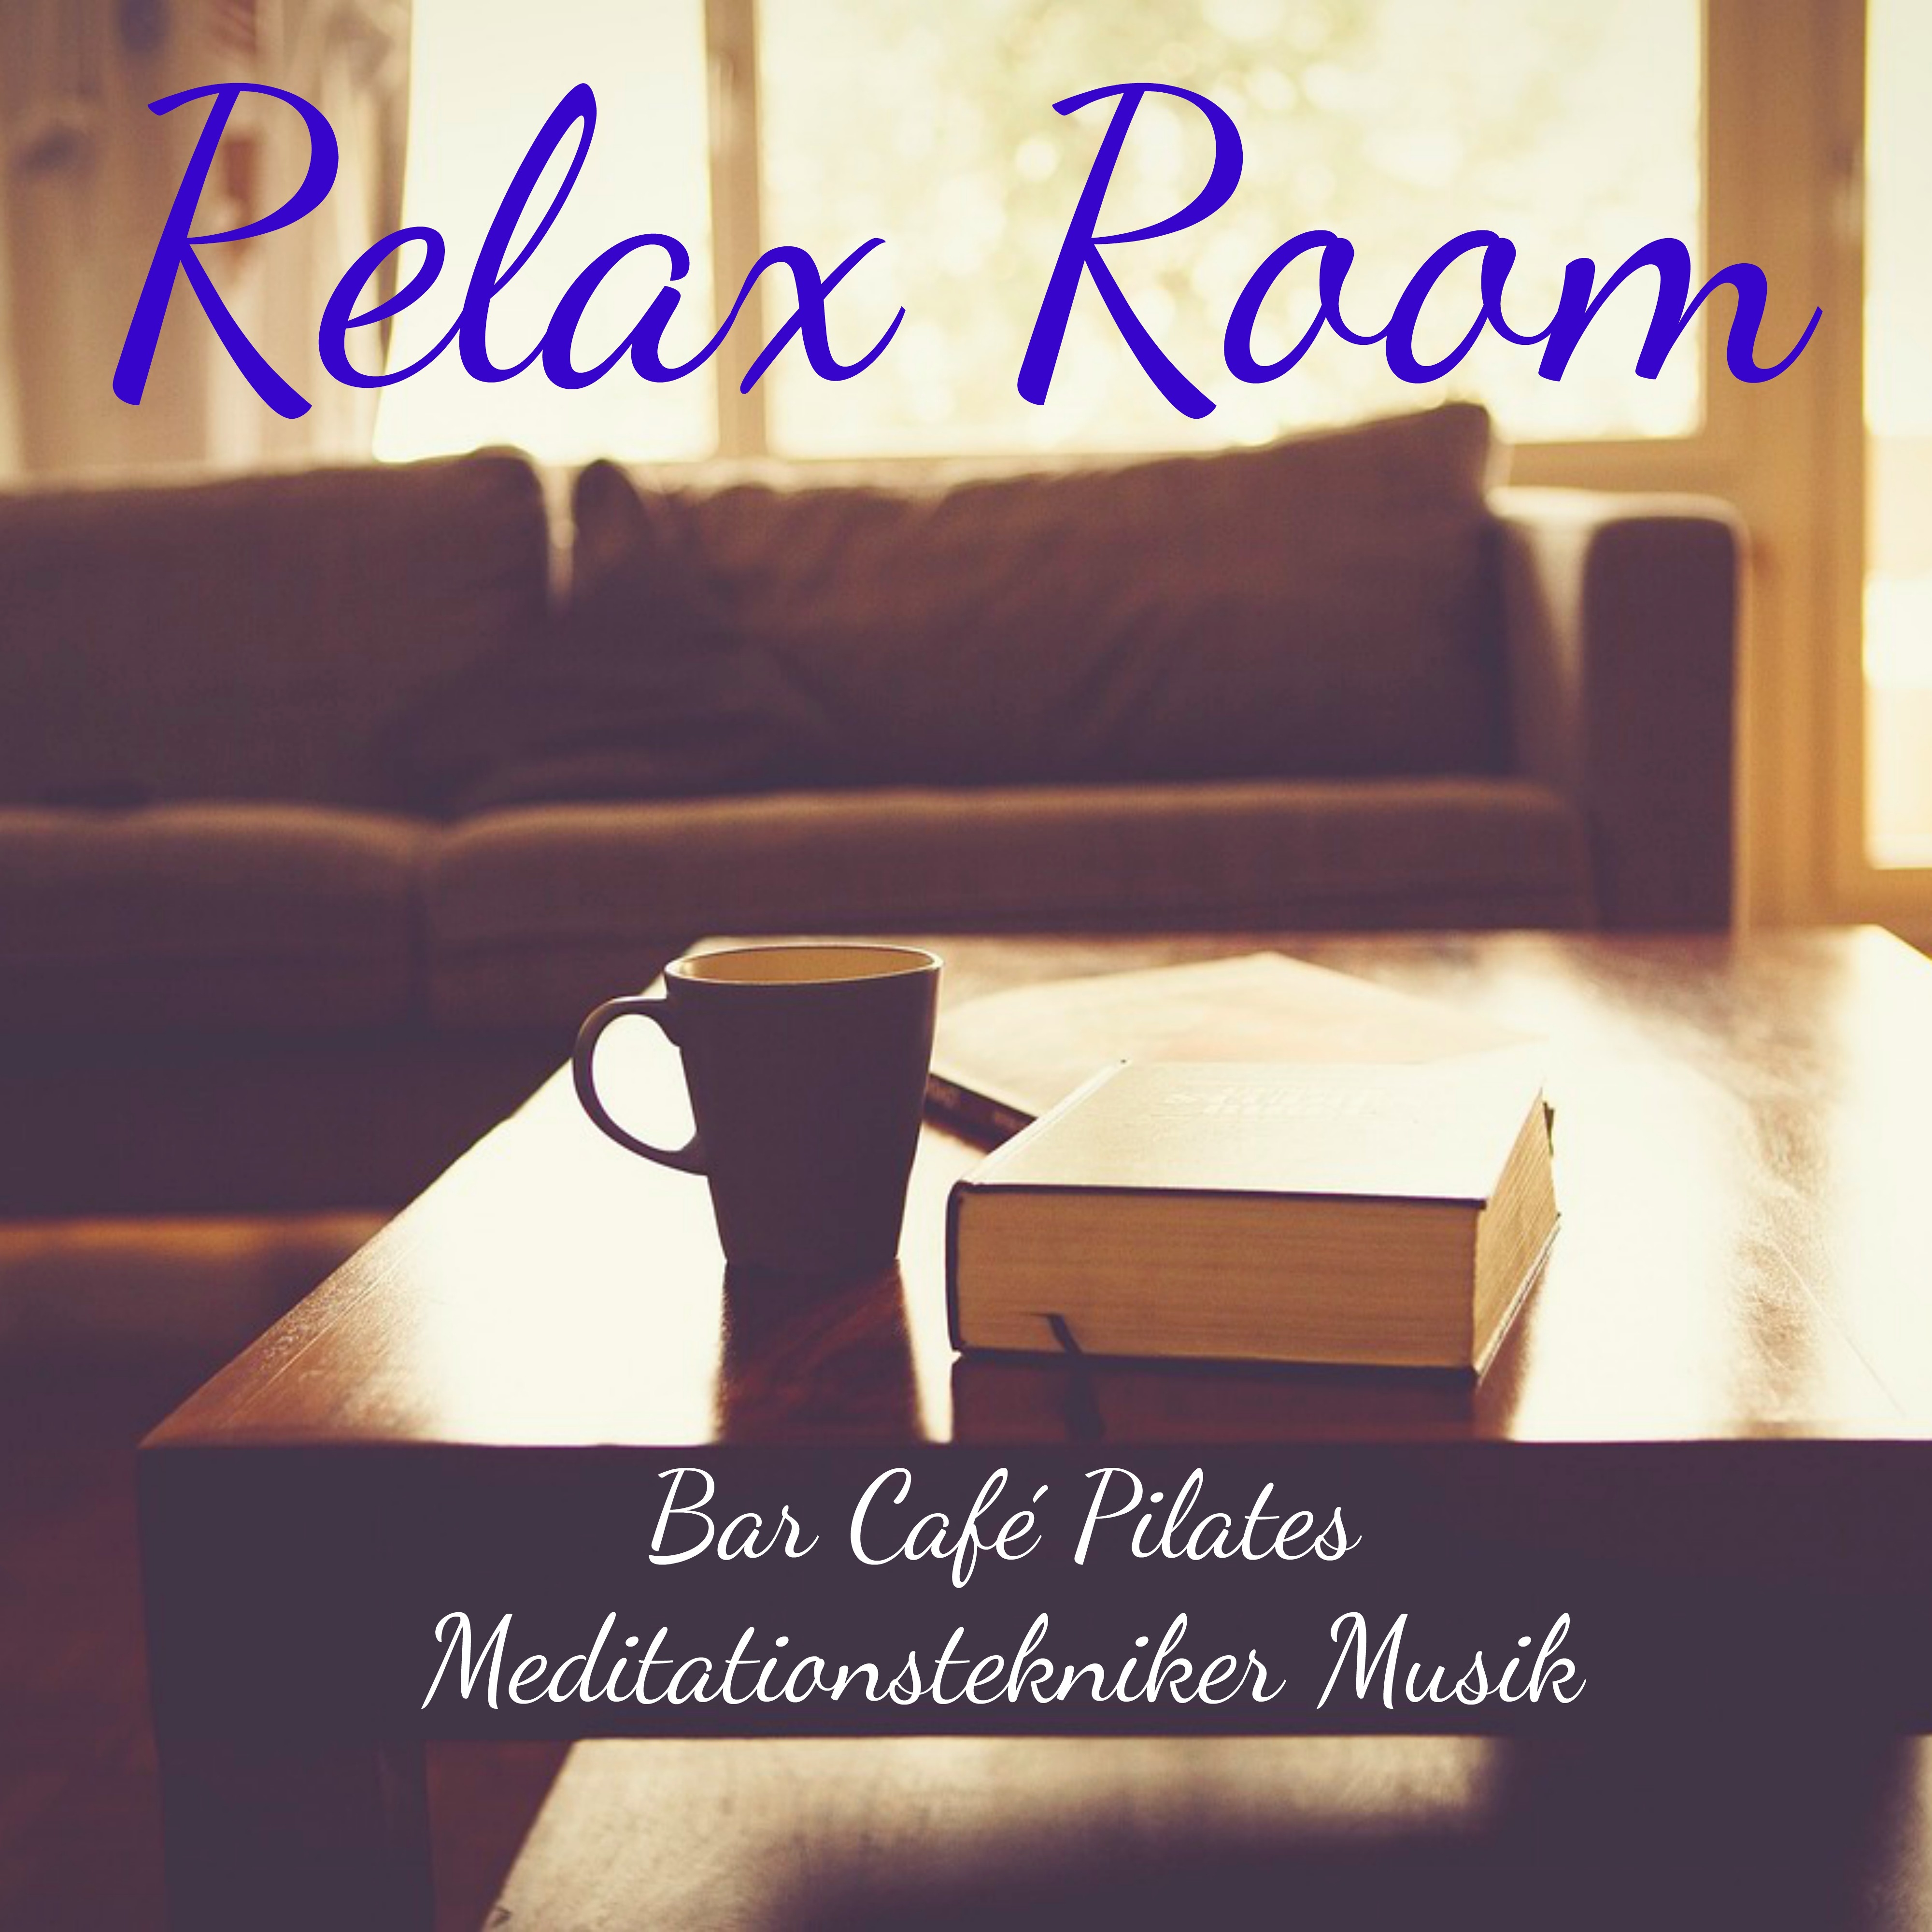 Relax Room  Bar Cafe Pilates Meditationstekniker Musik med Lounge Chillout Instrumental Ljud